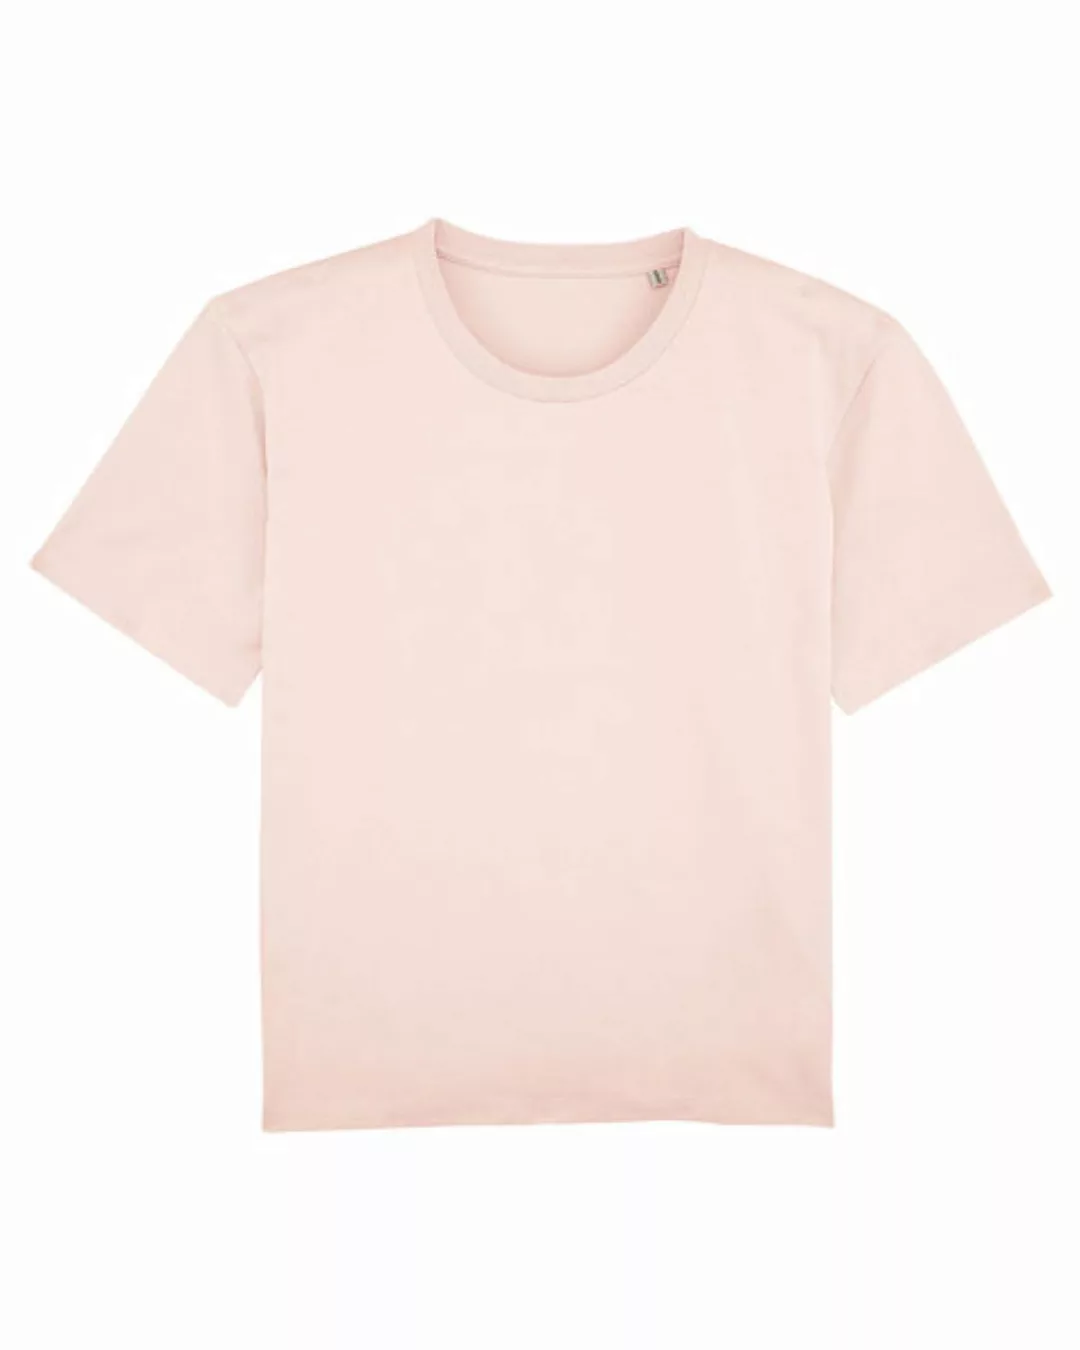 Basic T-shirt Damen, Dicke Bio-baumwolle (200 G/m²), Xs-l günstig online kaufen